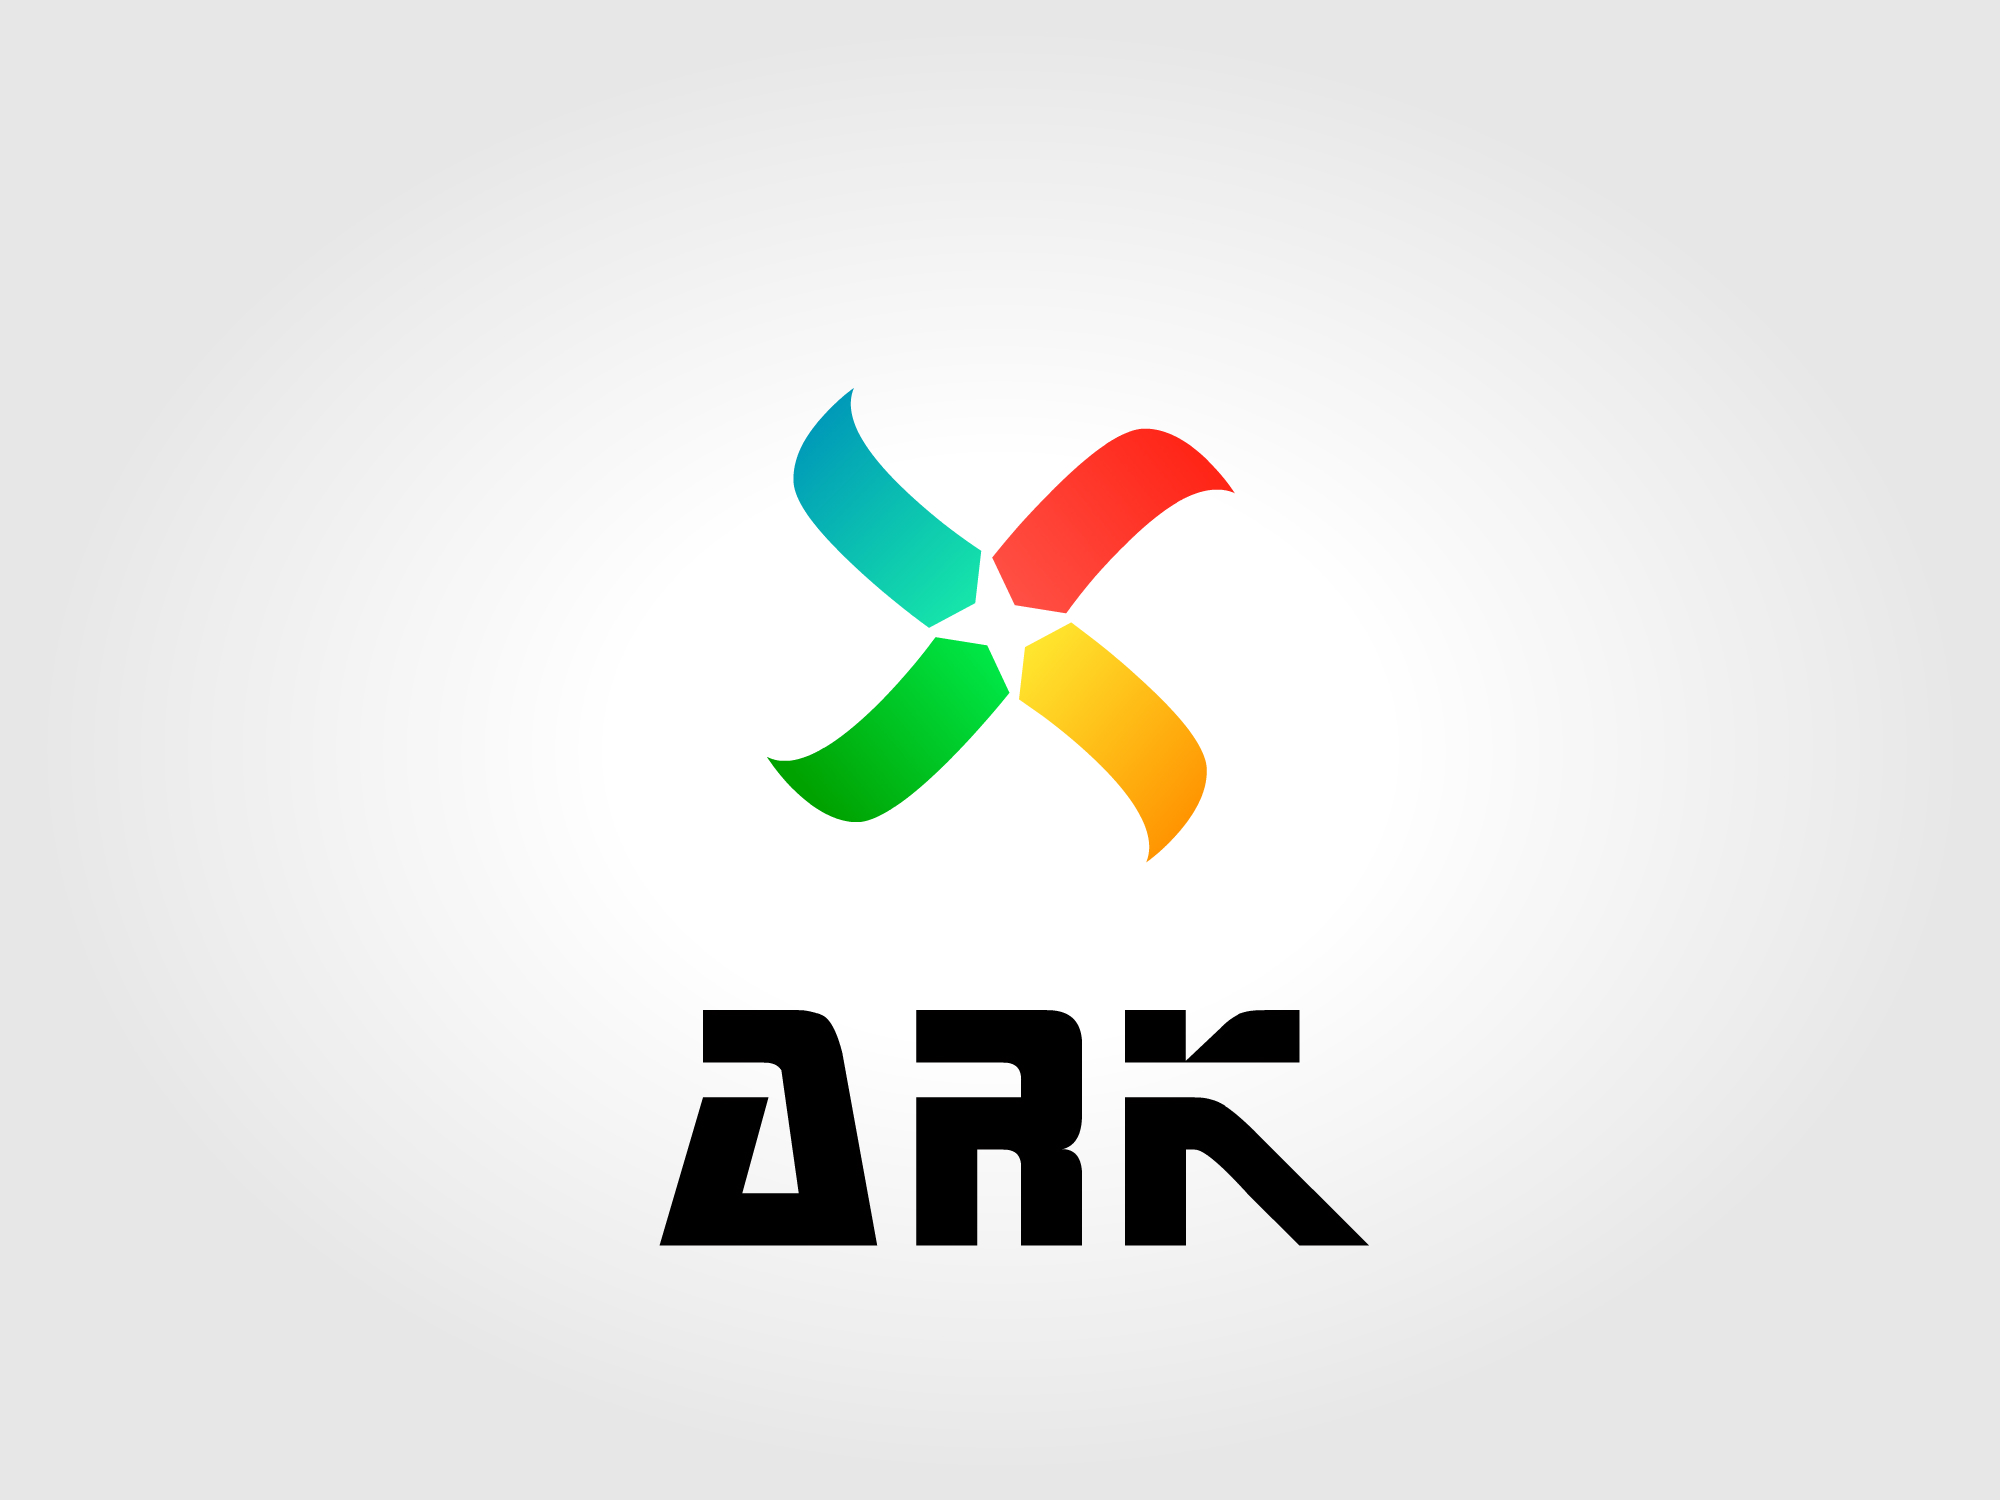 ARK Services WA